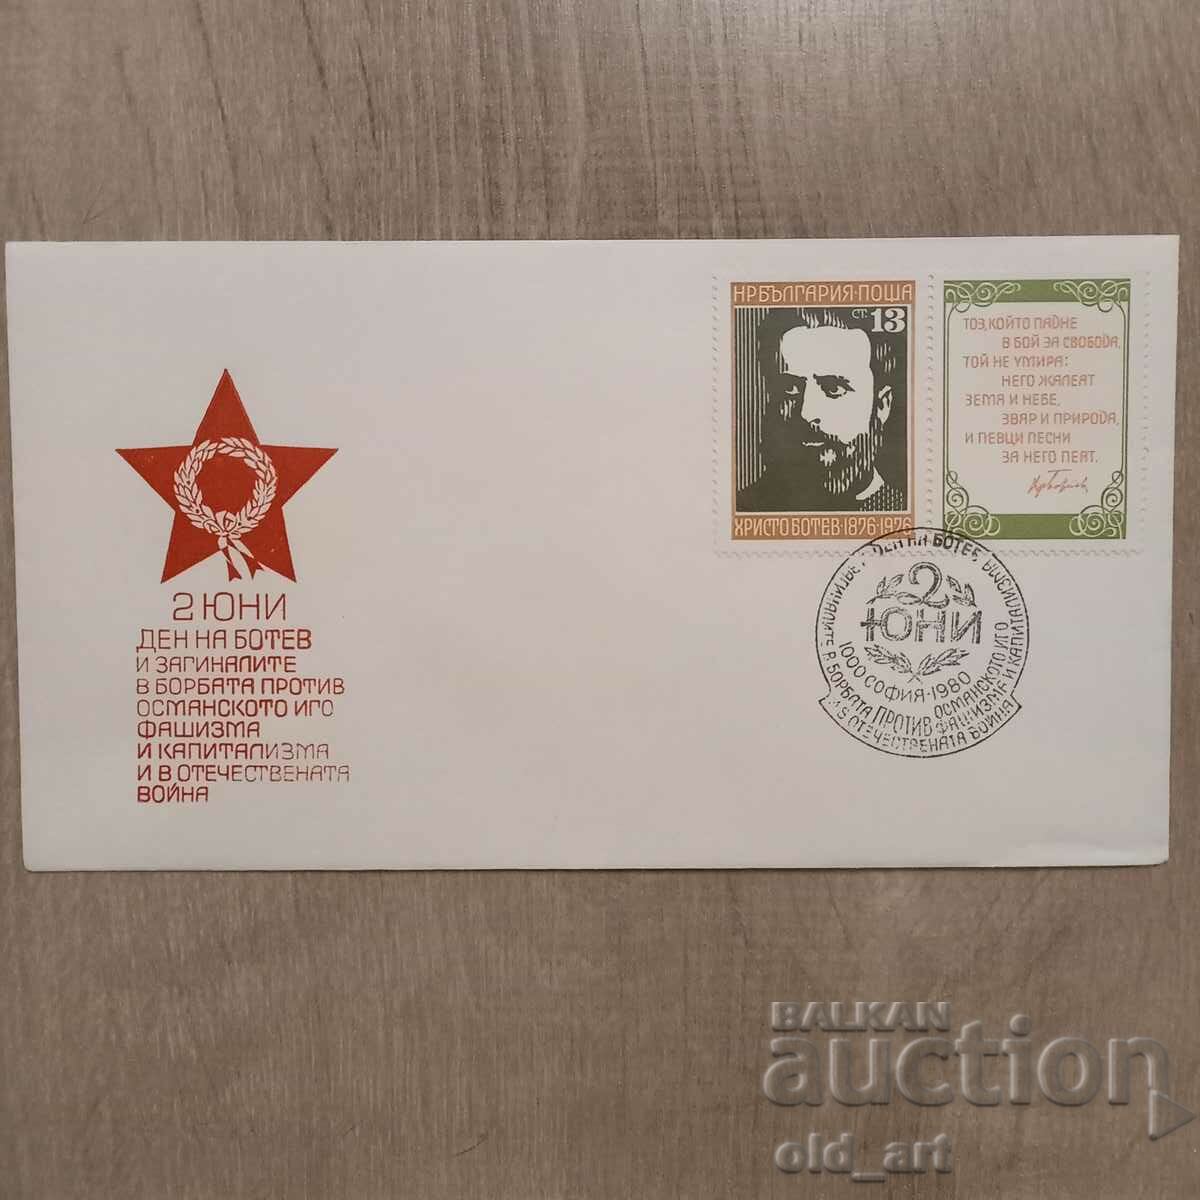 Postal envelope - June 2 Botev Day